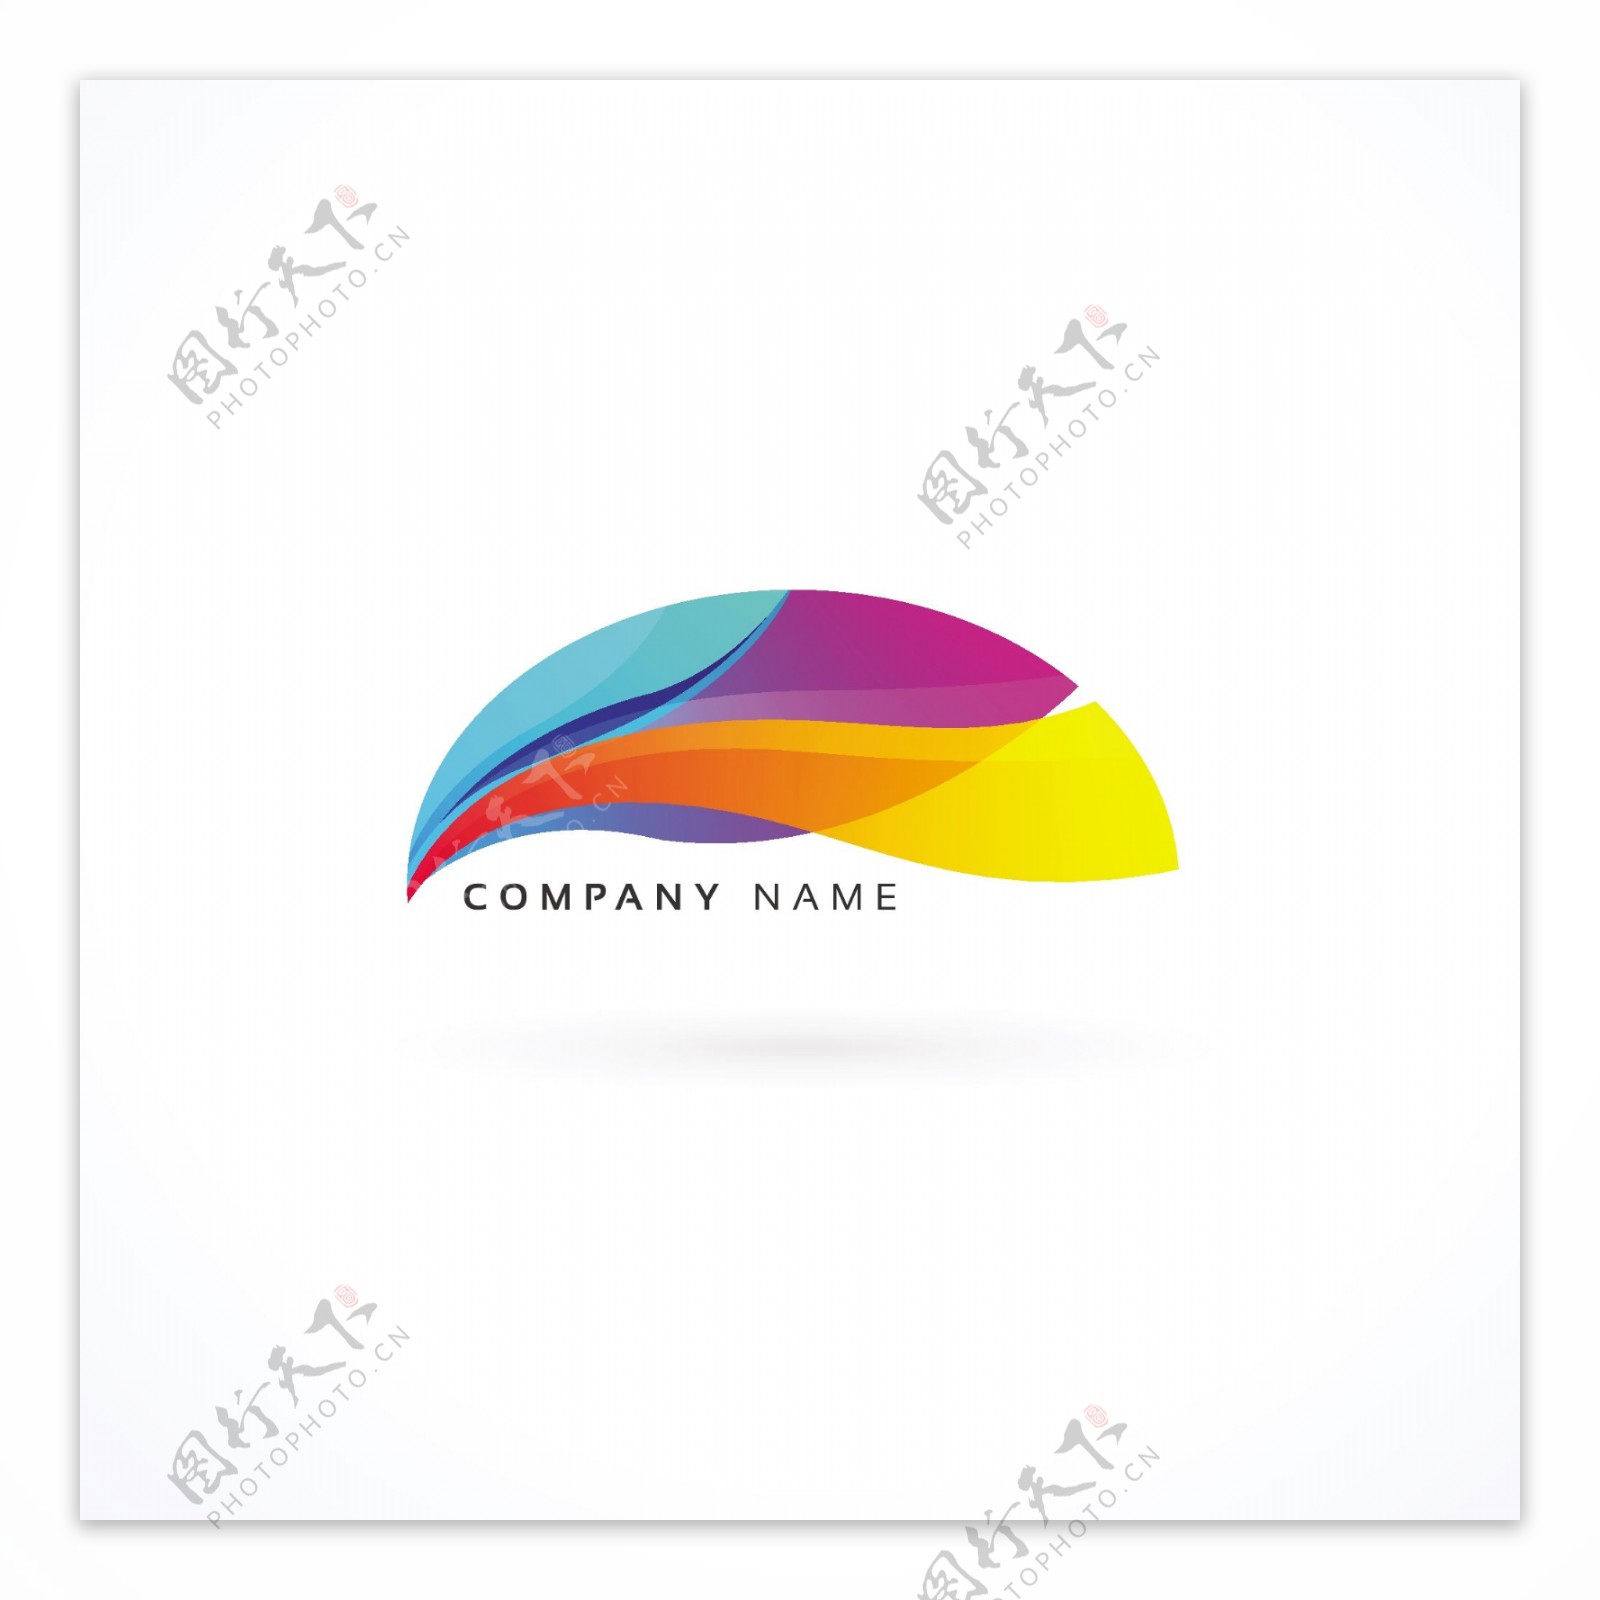 抽象形状彩色企业商标logo模板